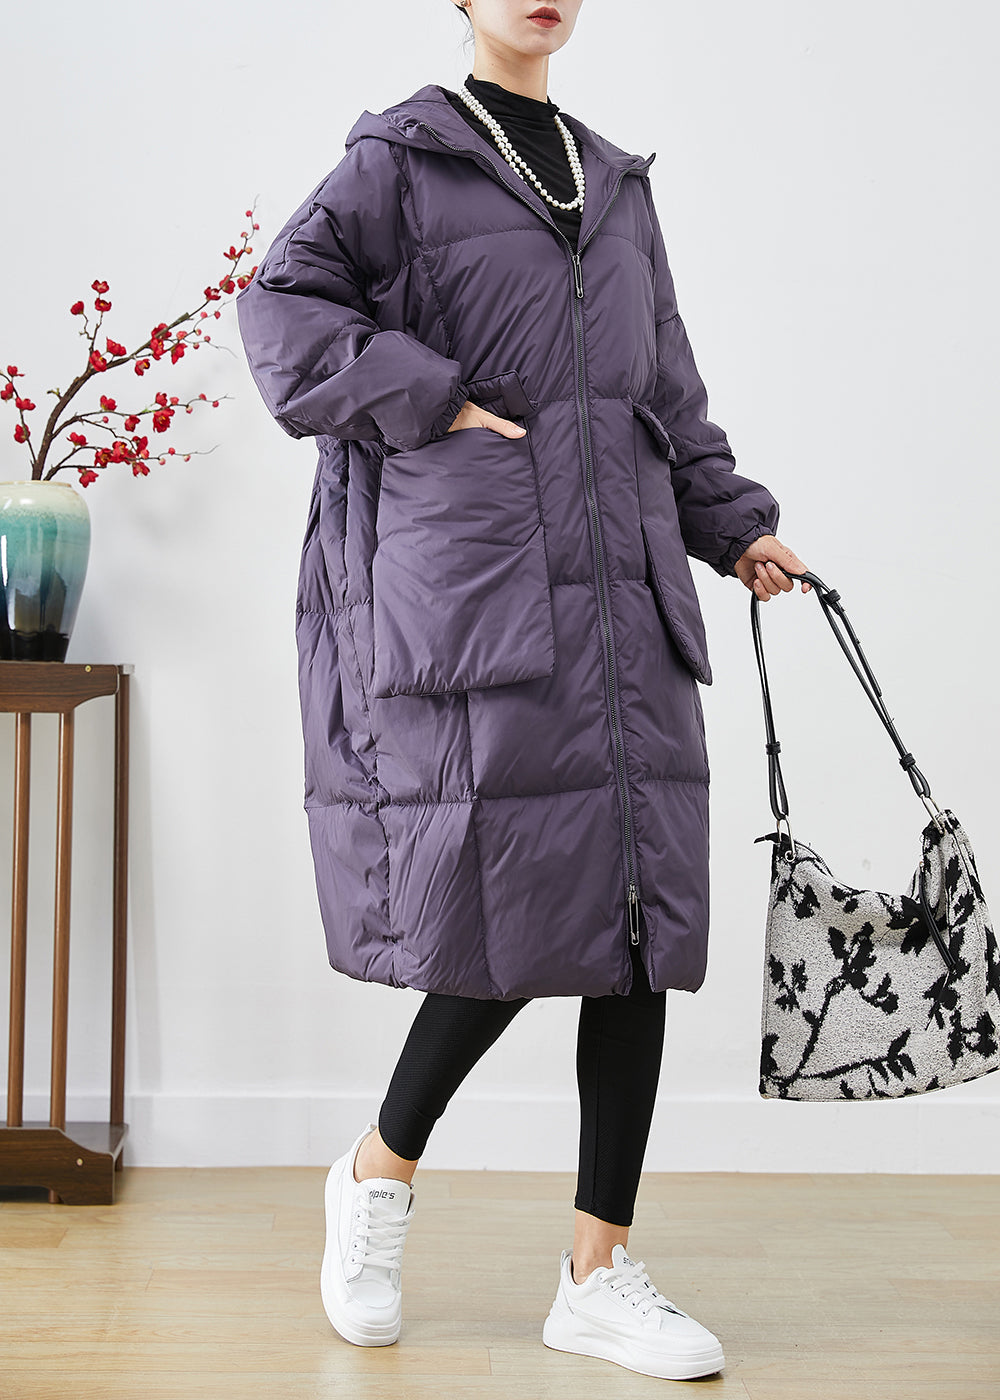 Style Purple Oversized Big Pockets Warm Duck Down Jacket In Winter